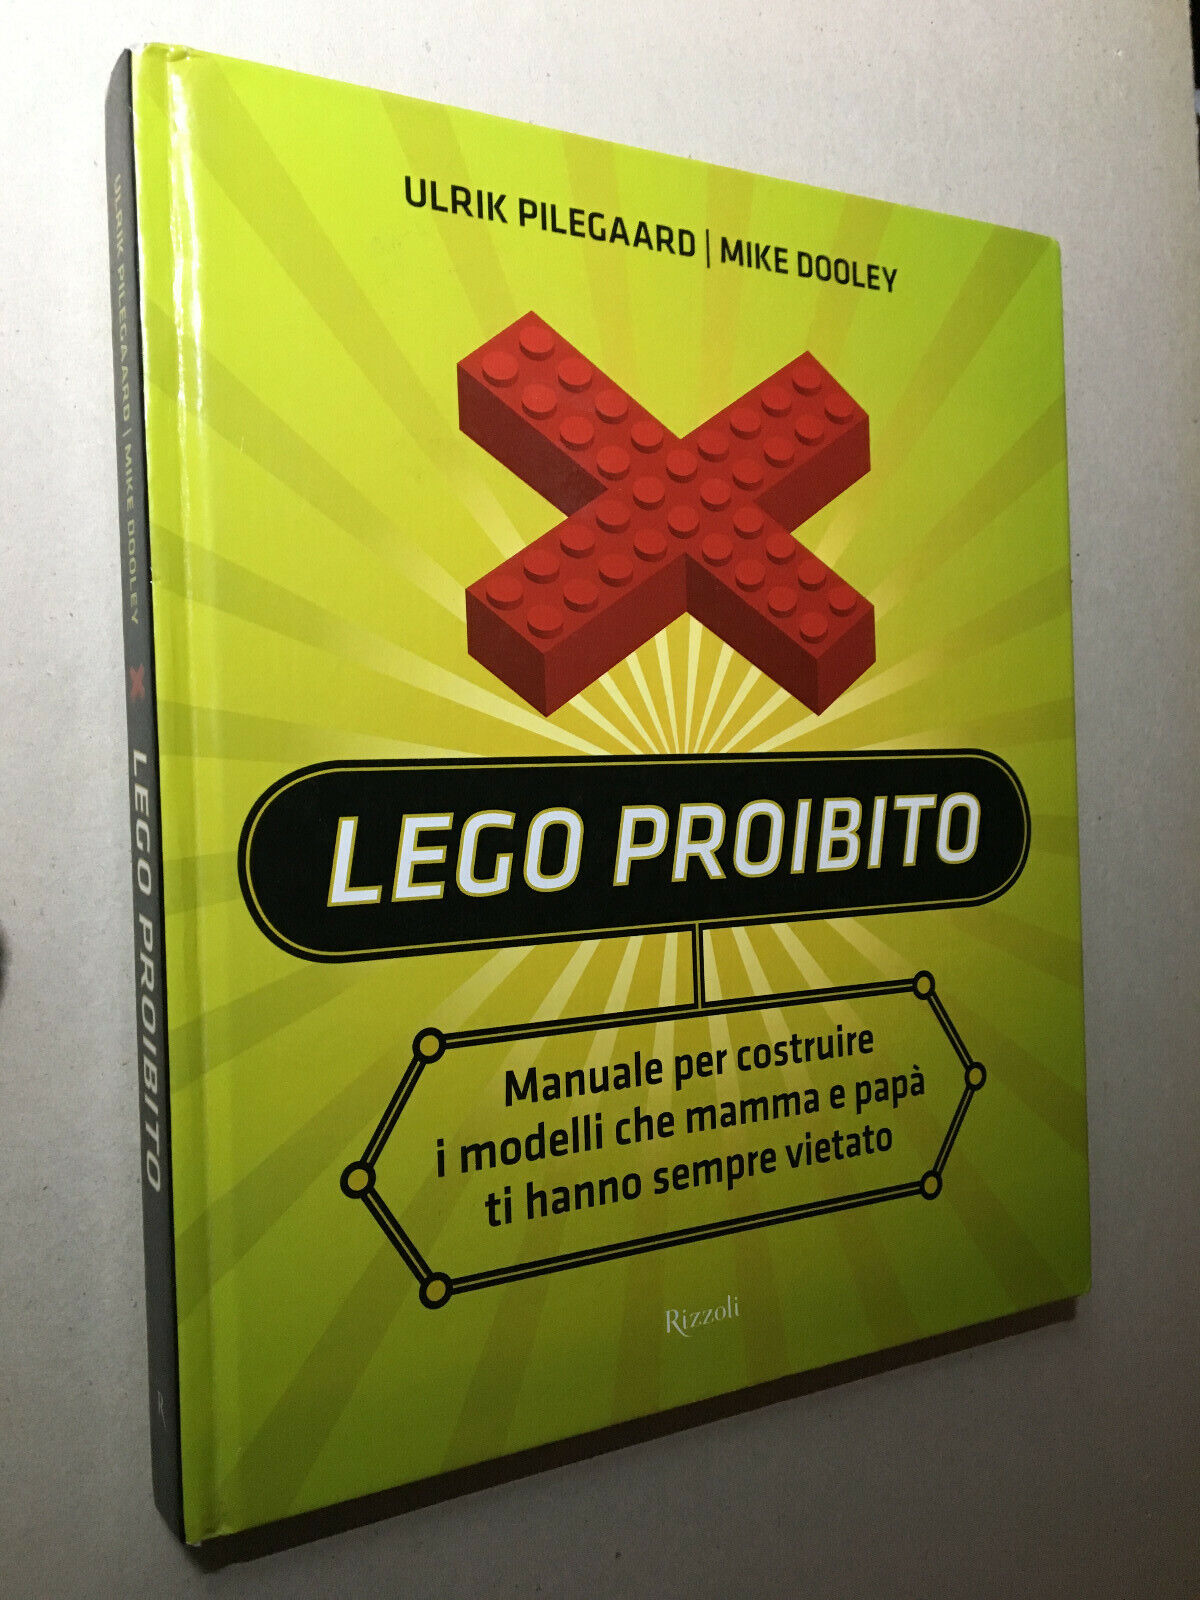 Ulrik Pilegaard Mike Dooley – Lego proibito (PRIMA EDIZIONE Rizzoli 2008)